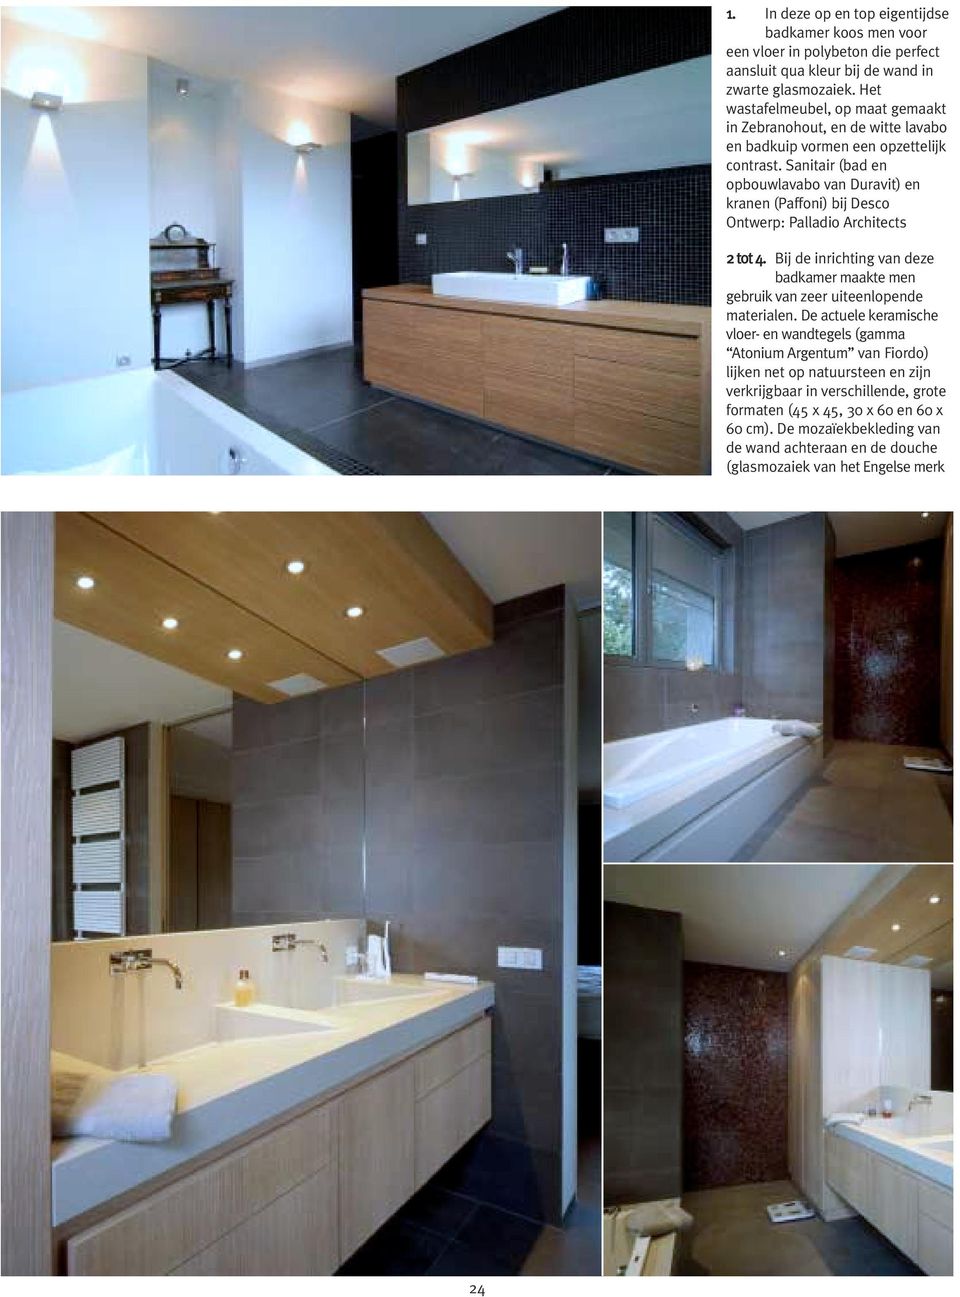 Sanitair (bad en opbouwlavabo van Duravit) en kranen (Paffoni) bij Desco Ontwerp: Palladio Architects 2 tot 4.